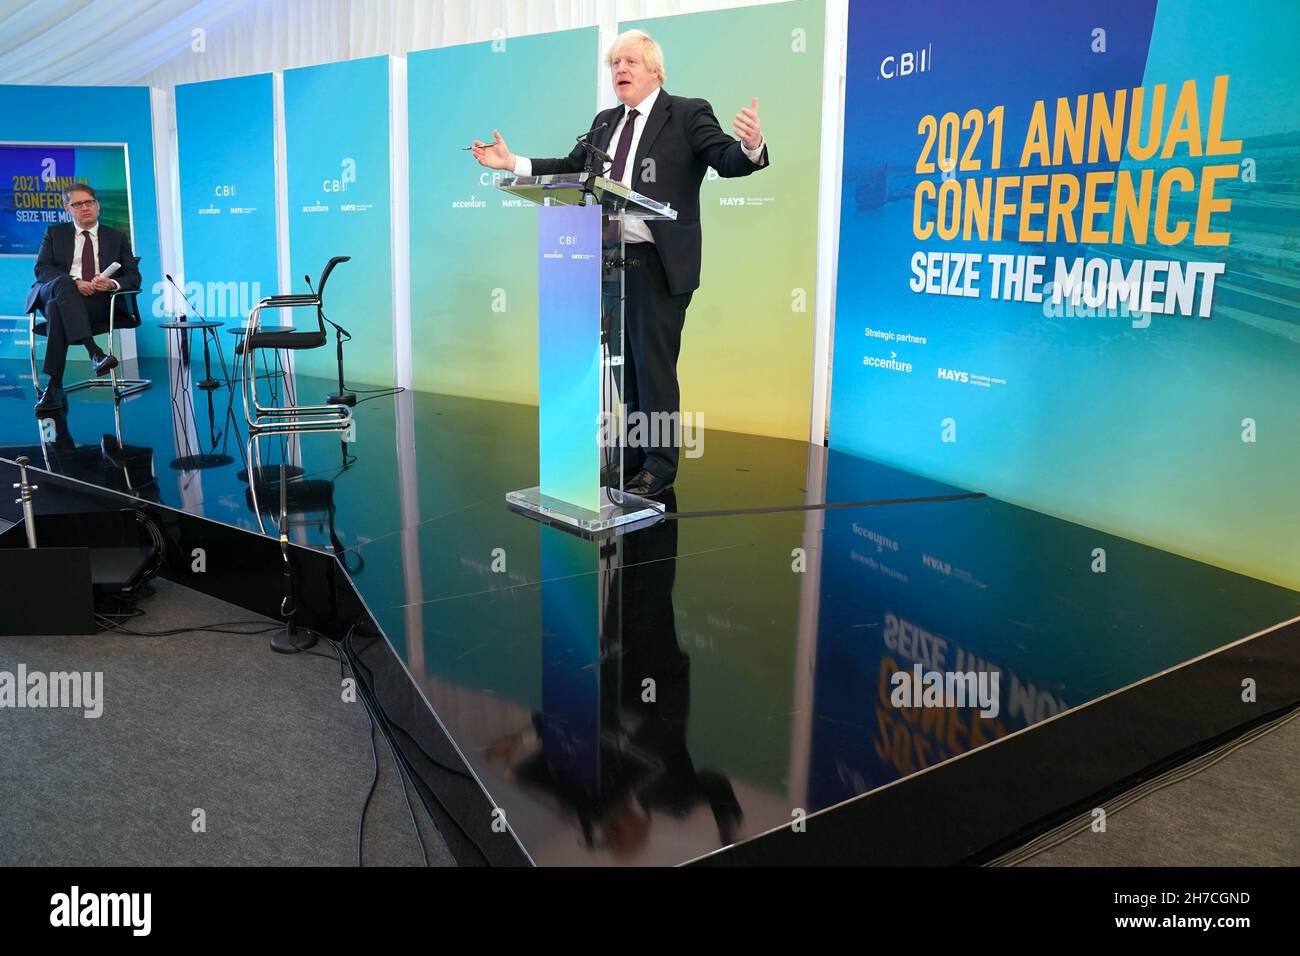 Il primo Ministro Boris Johnson ha parlato durante la conferenza annuale del CBI, al Porto di Tyne, a South Shields. Data foto: Lunedì 22 novembre 2021. Foto Stock